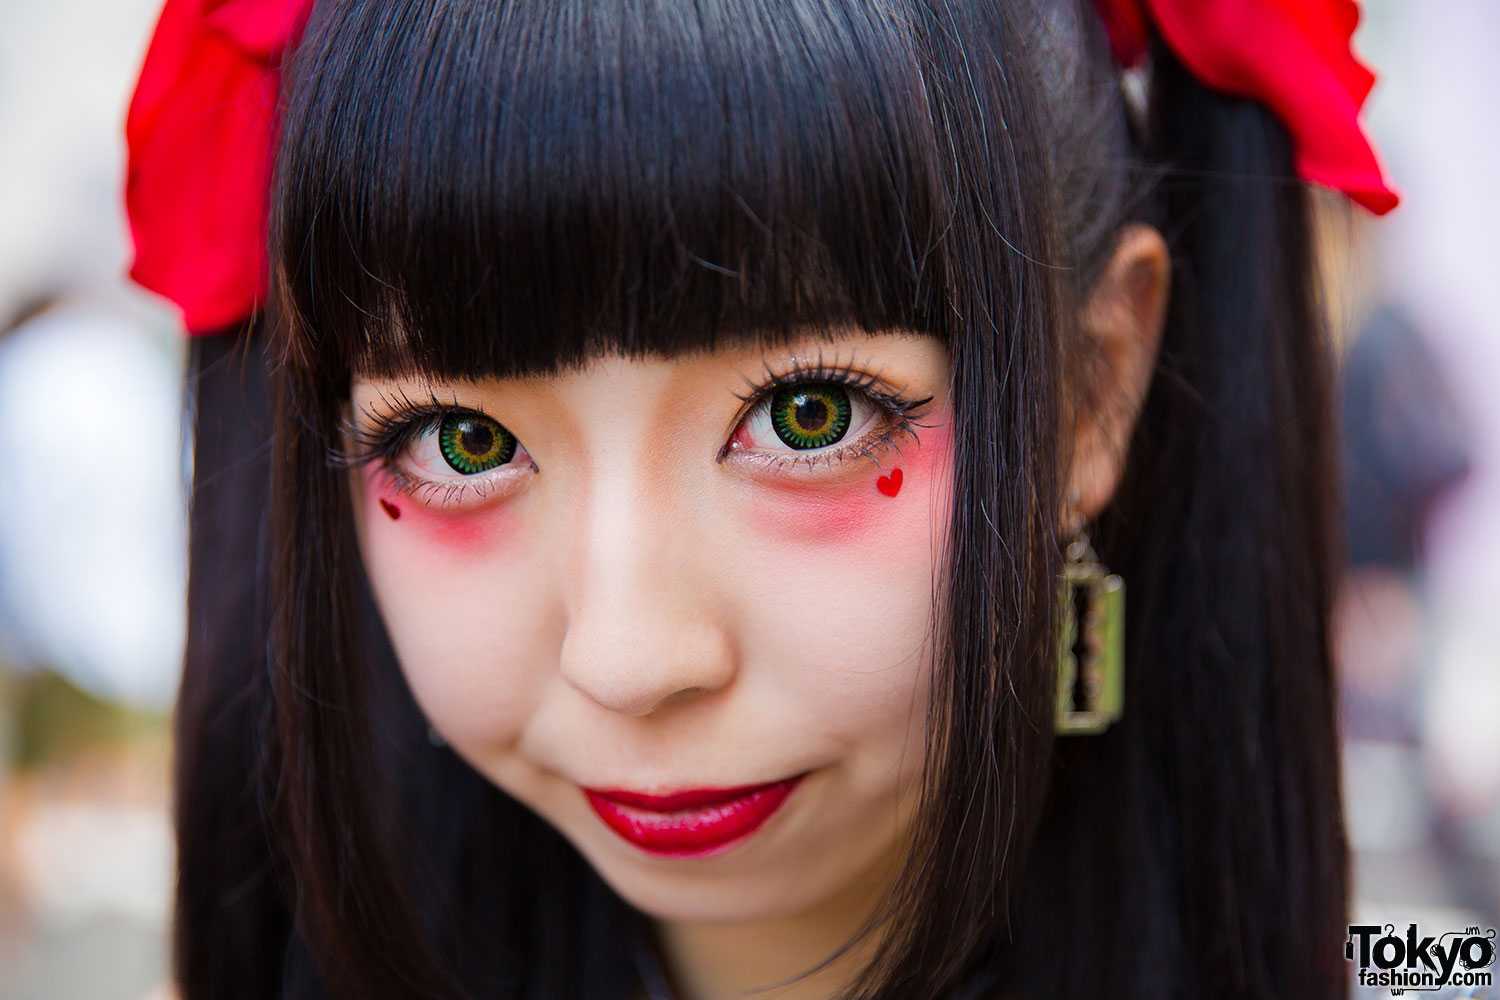 Азиатский макияж смотрится очень интересно Как накраситься в стиле аниме Каковы особенности традиционного японского make up Как сделать глаза в стиле гейши или мультяшного персонажа в домашних условиях